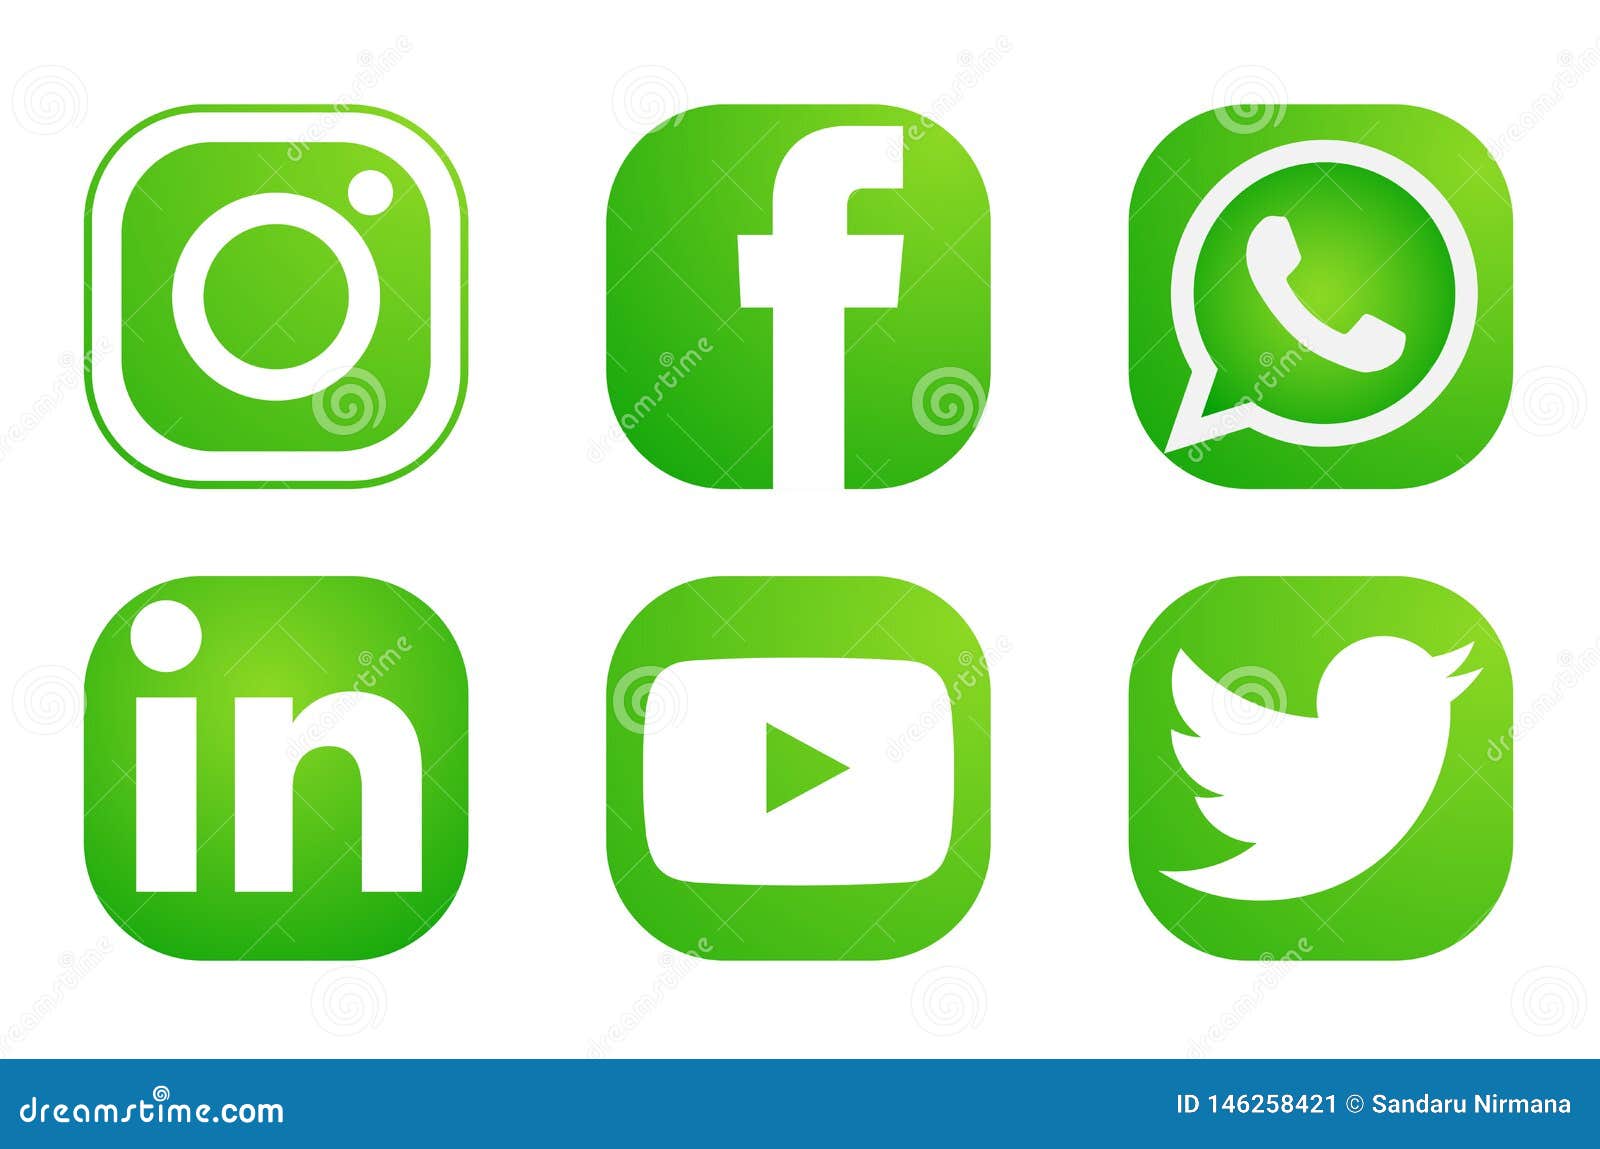 Set of Popular Social Media Logos Icons Instagram Facebook Twitter sẽ giúp bạn tạo nên các bố cục thiết kế đơn giản và thu hút với đầy đủ biểu tượng các trang mạng xã hội phổ biến như Instagram, Facebook, Twitter. Tuyệt vời cho những ai muốn tạo ra những thiết kế đồng bộ và đa dạng.